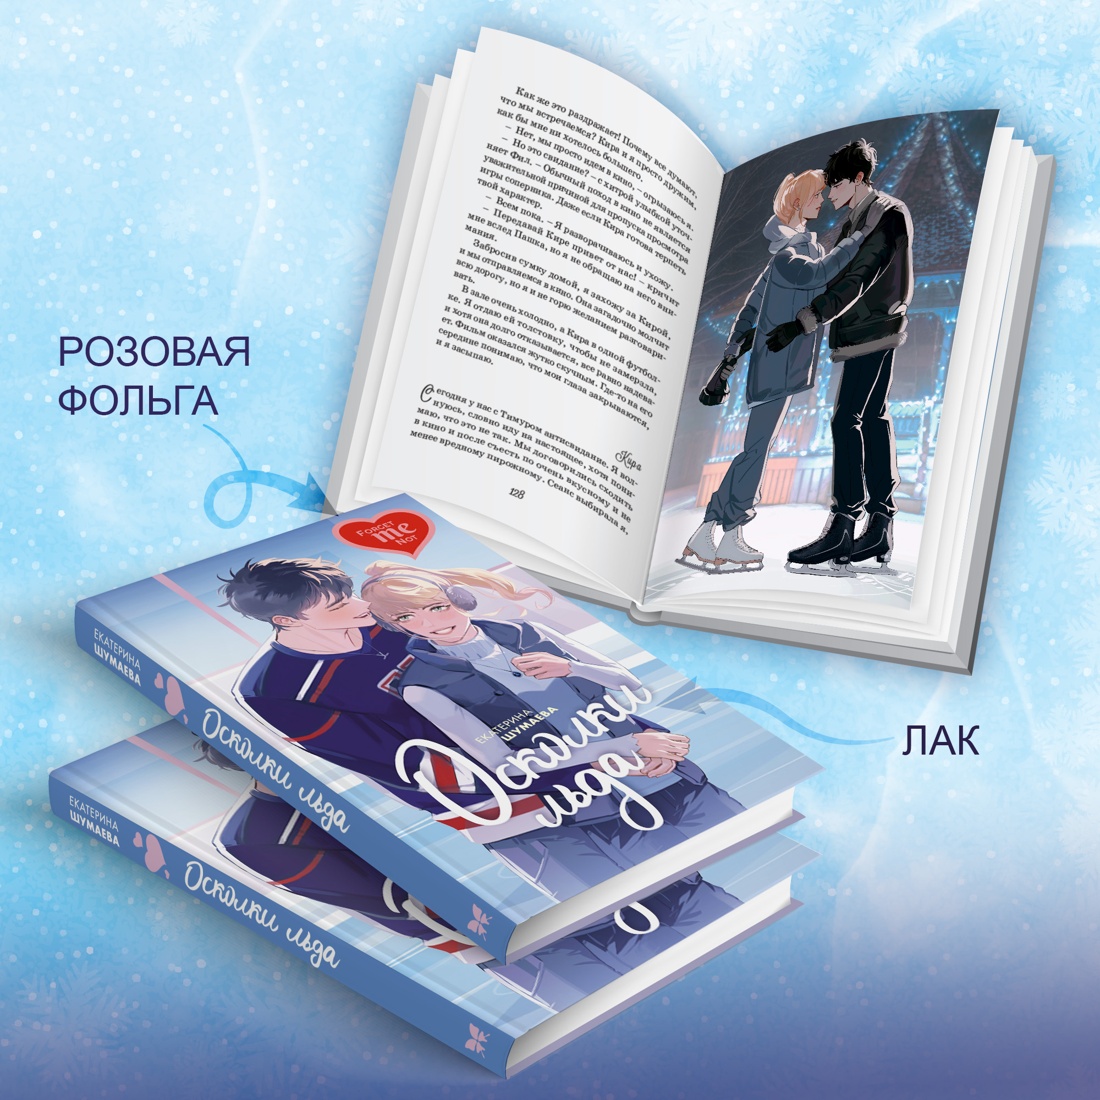 Промо материал к книге "Осколки льда" №3